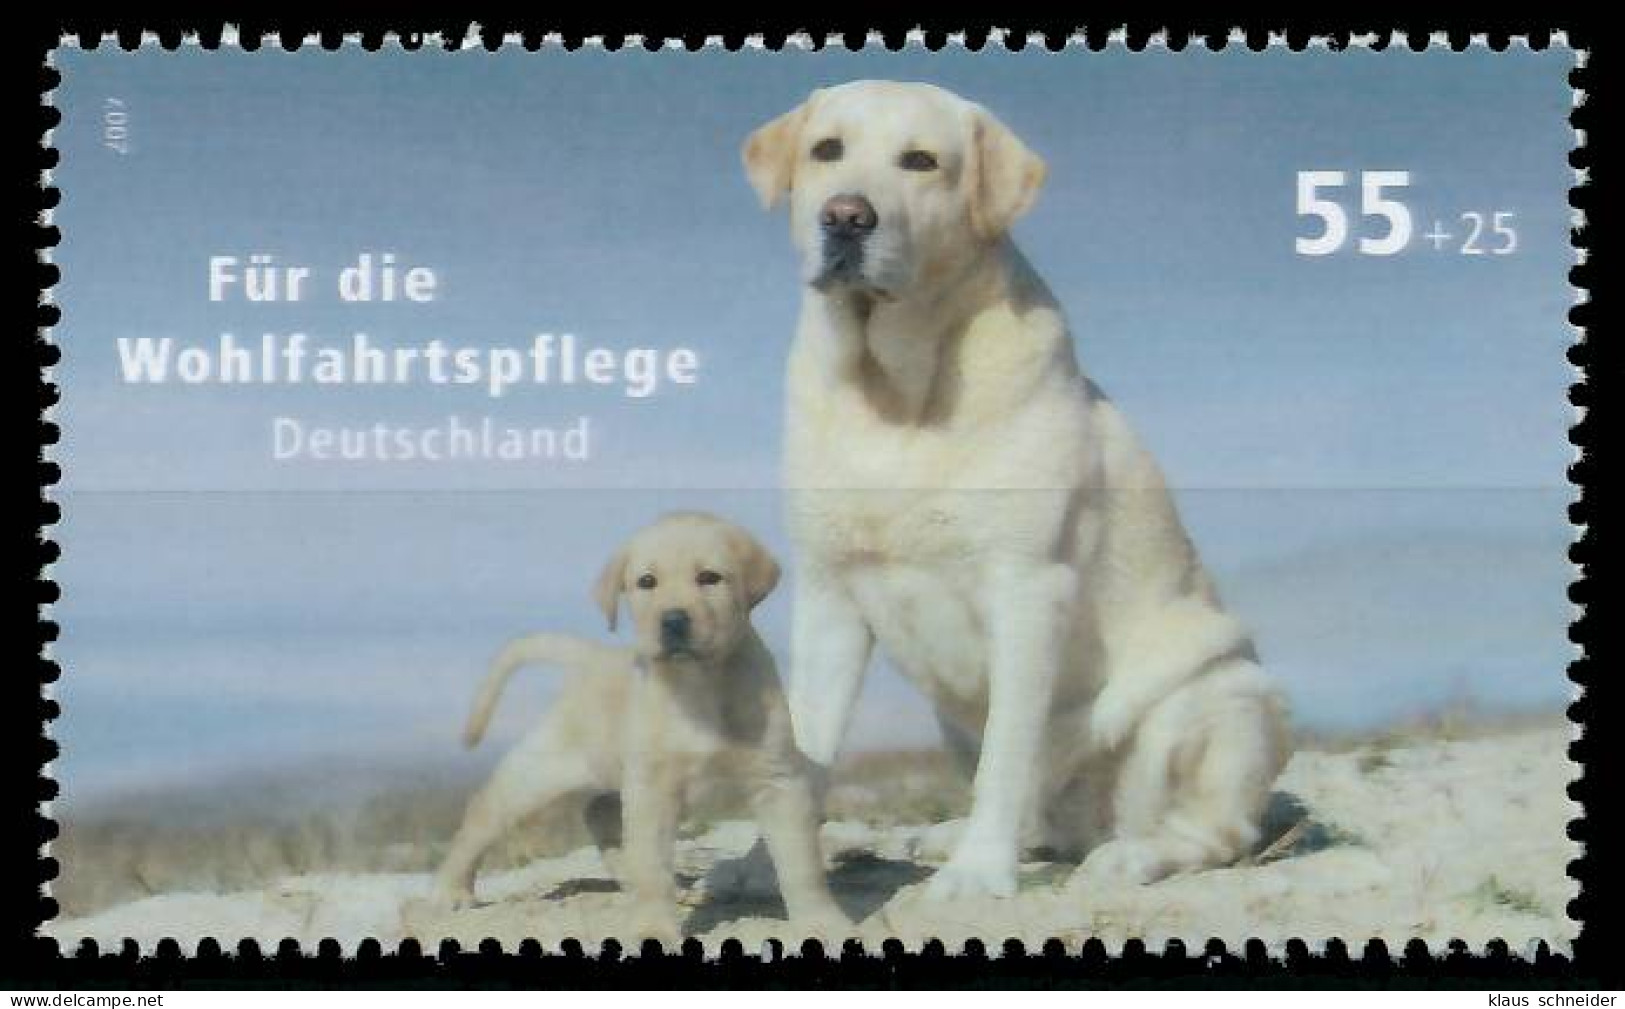 BRD BUND 2007 Nr 2632 Postfrisch SE07DEA - Unused Stamps